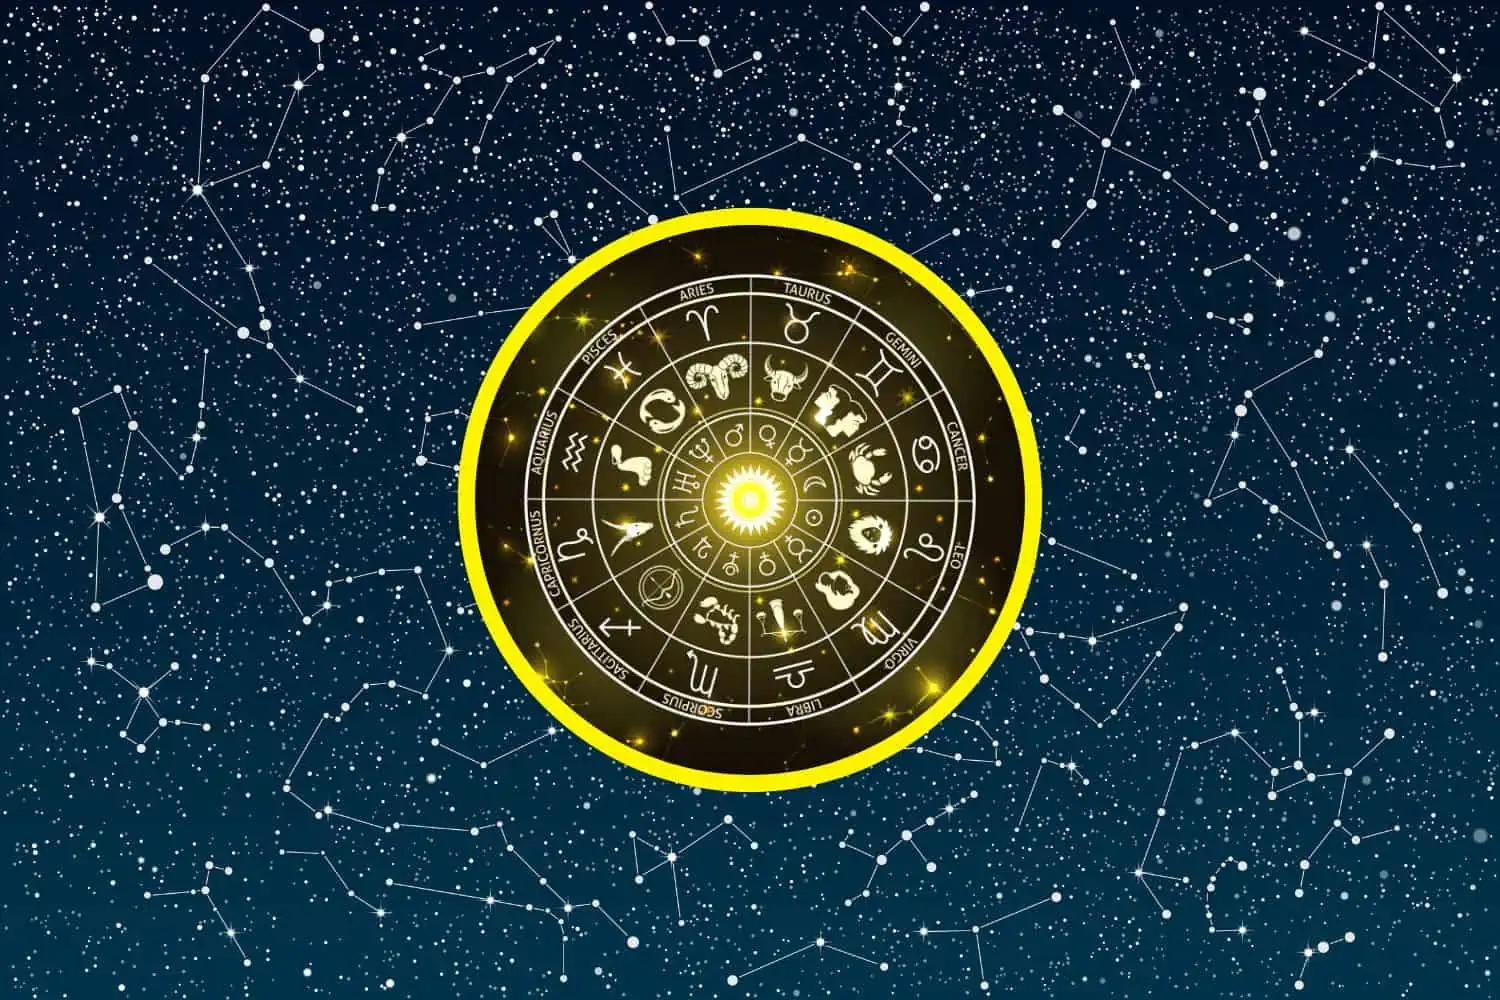 Today’s Free Horoscopes Tuesday 14 February 2023